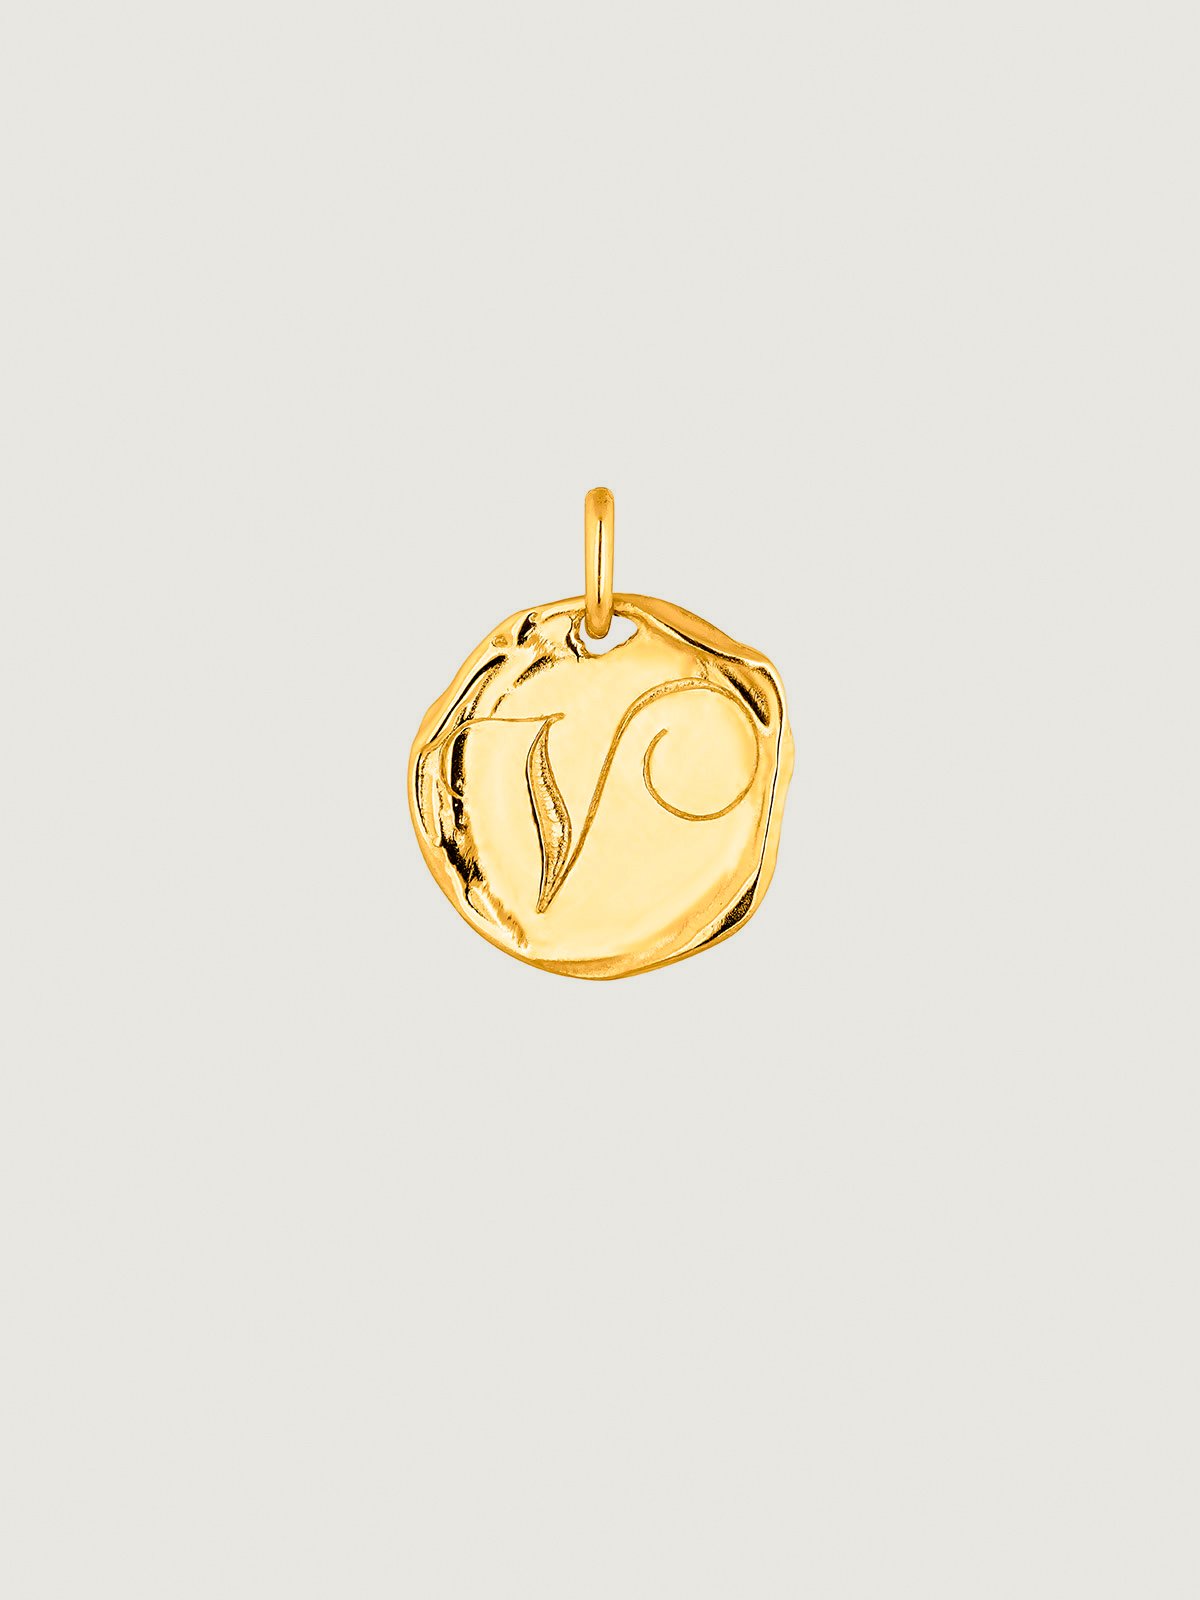 Charme artisanal en argent 925 plaqué en or jaune 18K avec l'initiale V